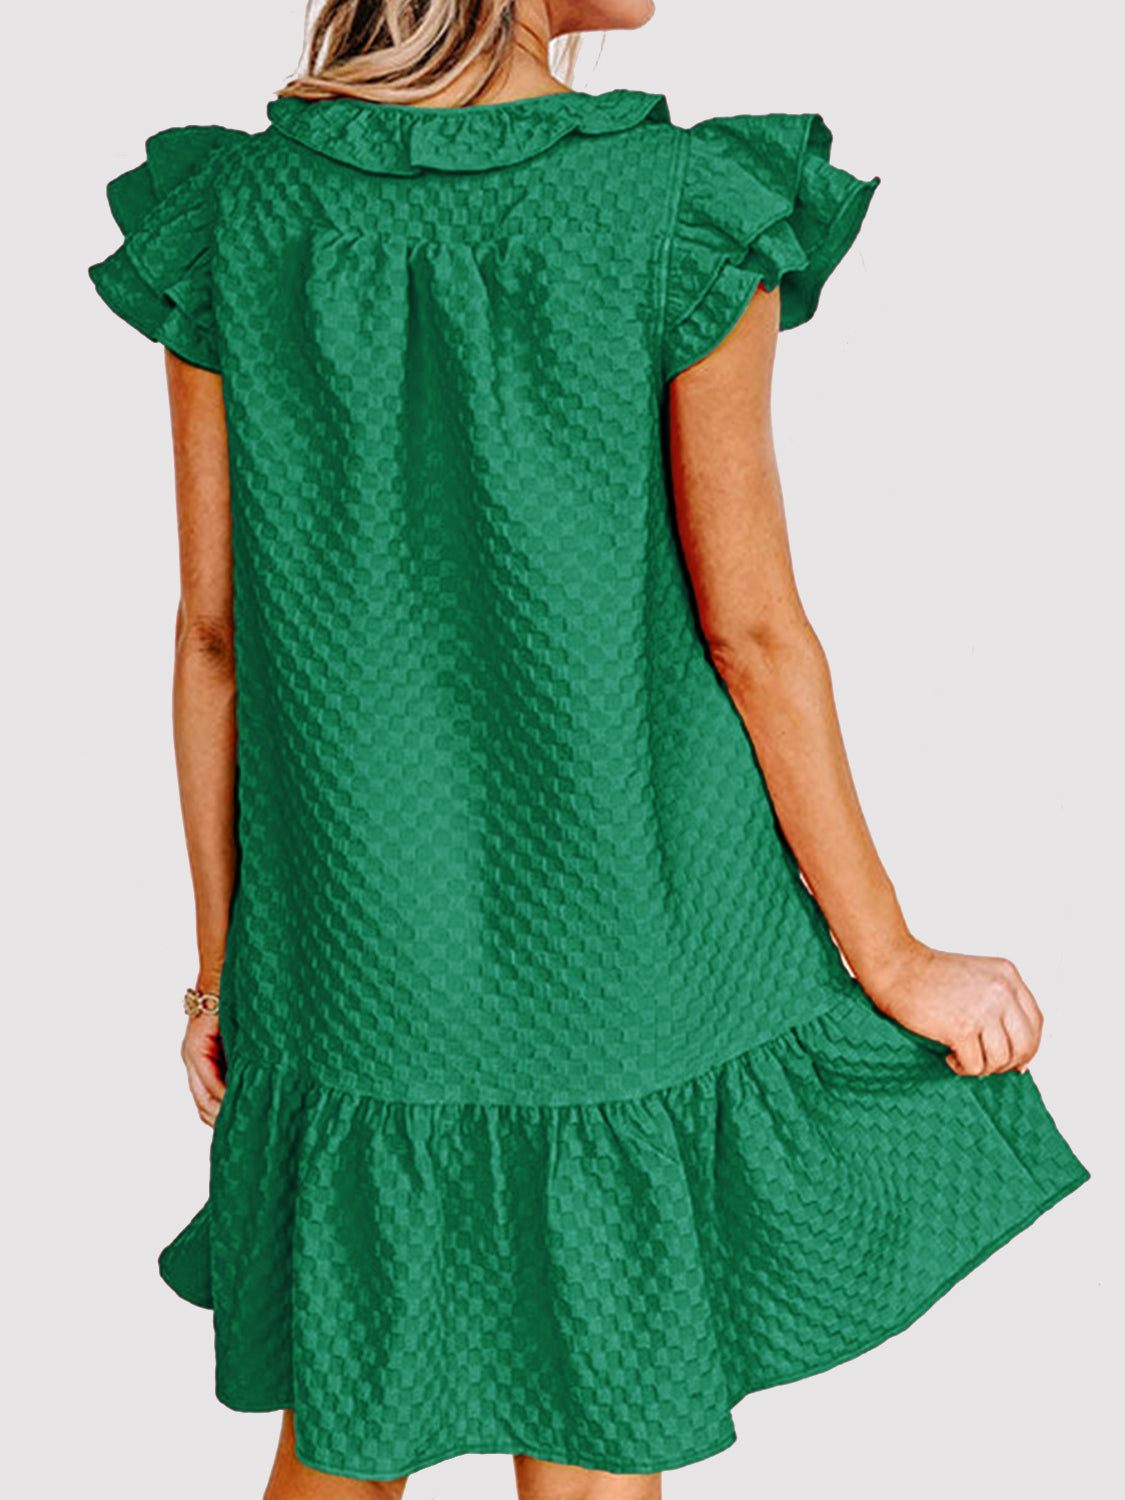 TEEK - Green Text Me Ruffled Tie Neck Dress DRESS TEEK Trend   